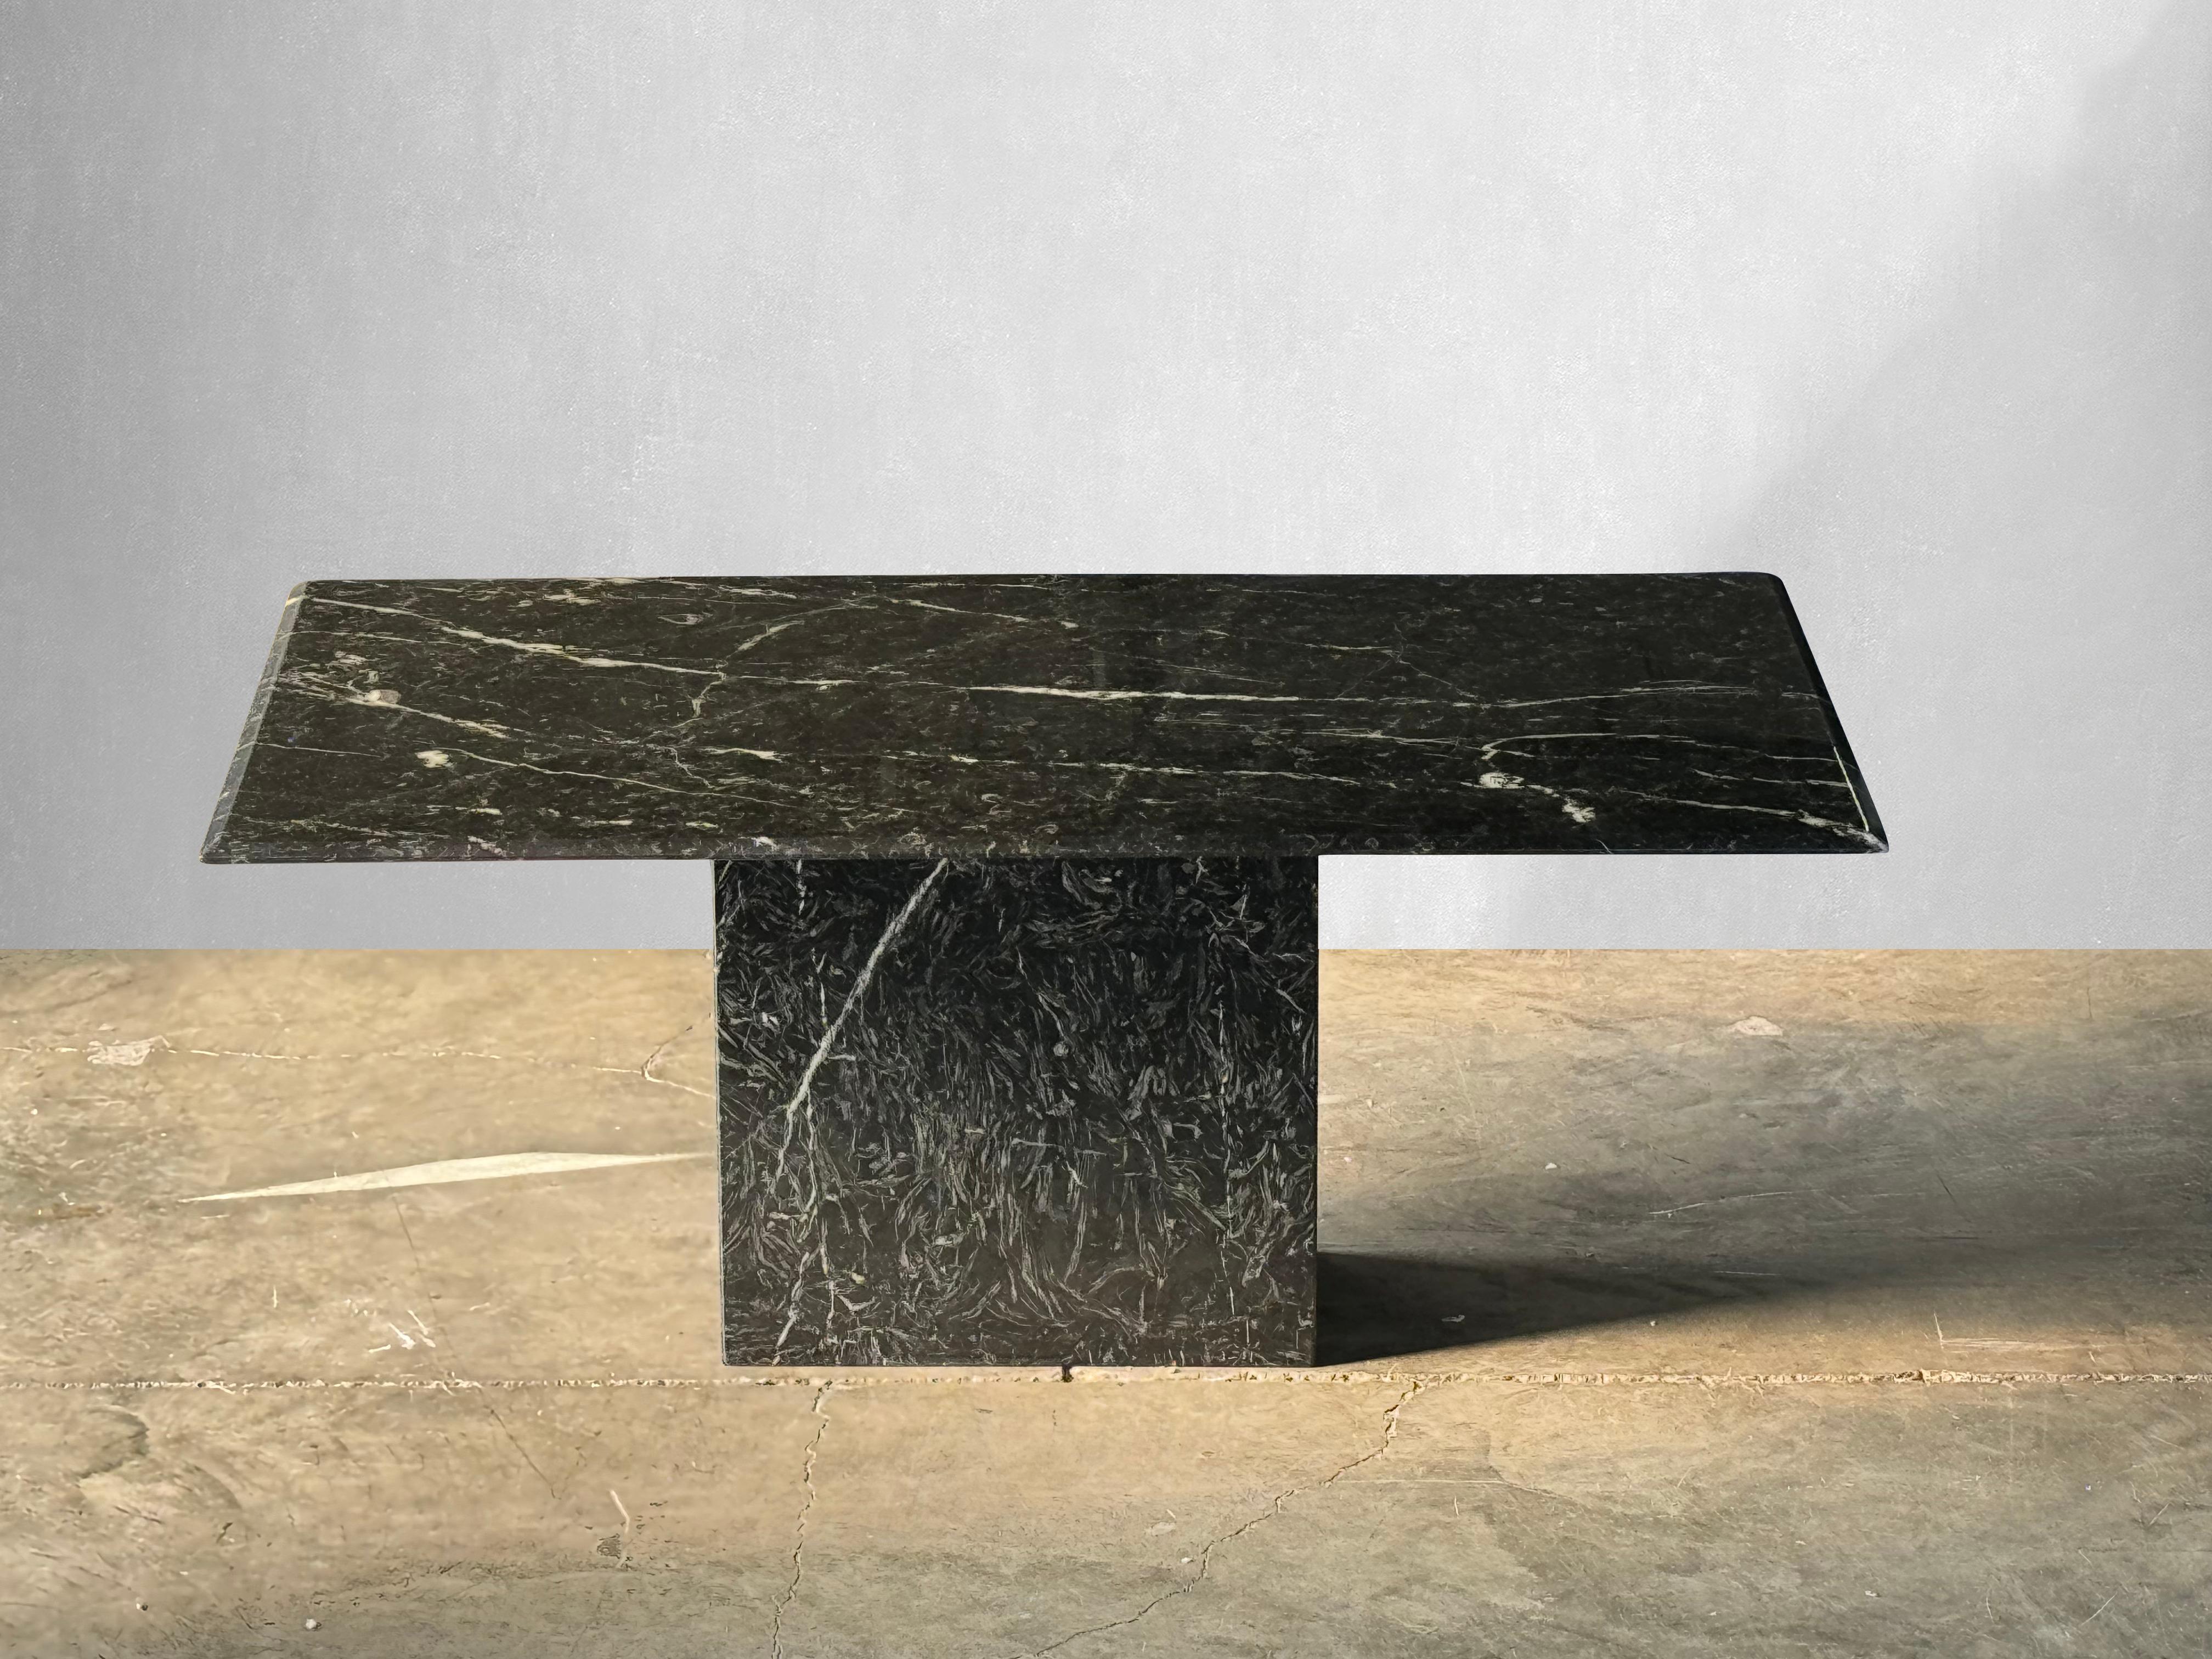 Auffälliger Petite-Esstisch aus schwarzem Nero Marquina-Marmor. 

Nero Marquina ist ein hochwertiger Stein, der aus dem Baskenland im Norden Spaniens stammt. Dieser Tisch hat eine schöne milchig-weiße Maserung. 

Kürzlich poliert und versiegelt, wie